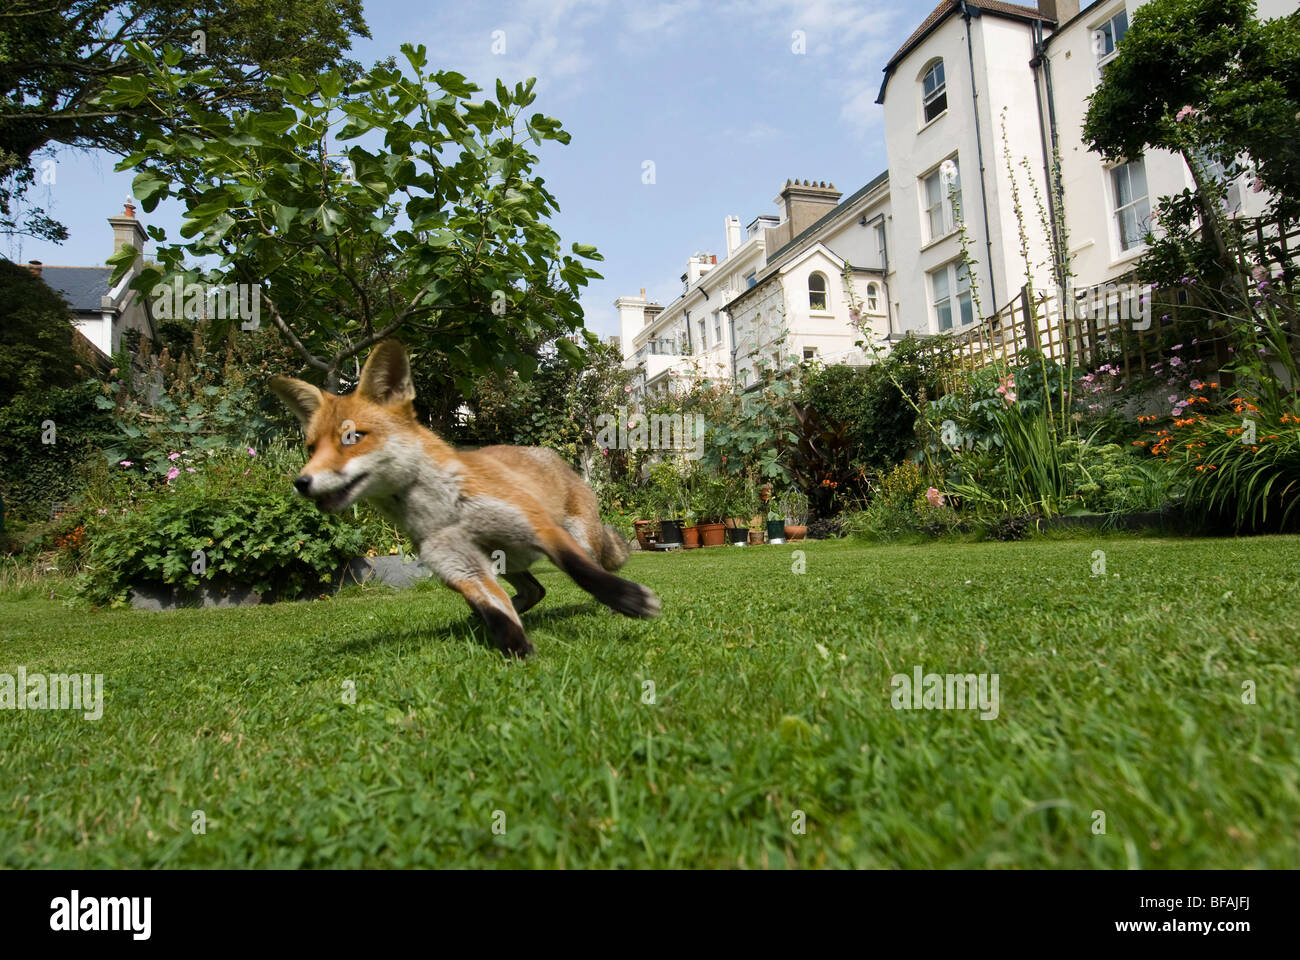 An urban fox  in a town garden in daylight. Stock Photo